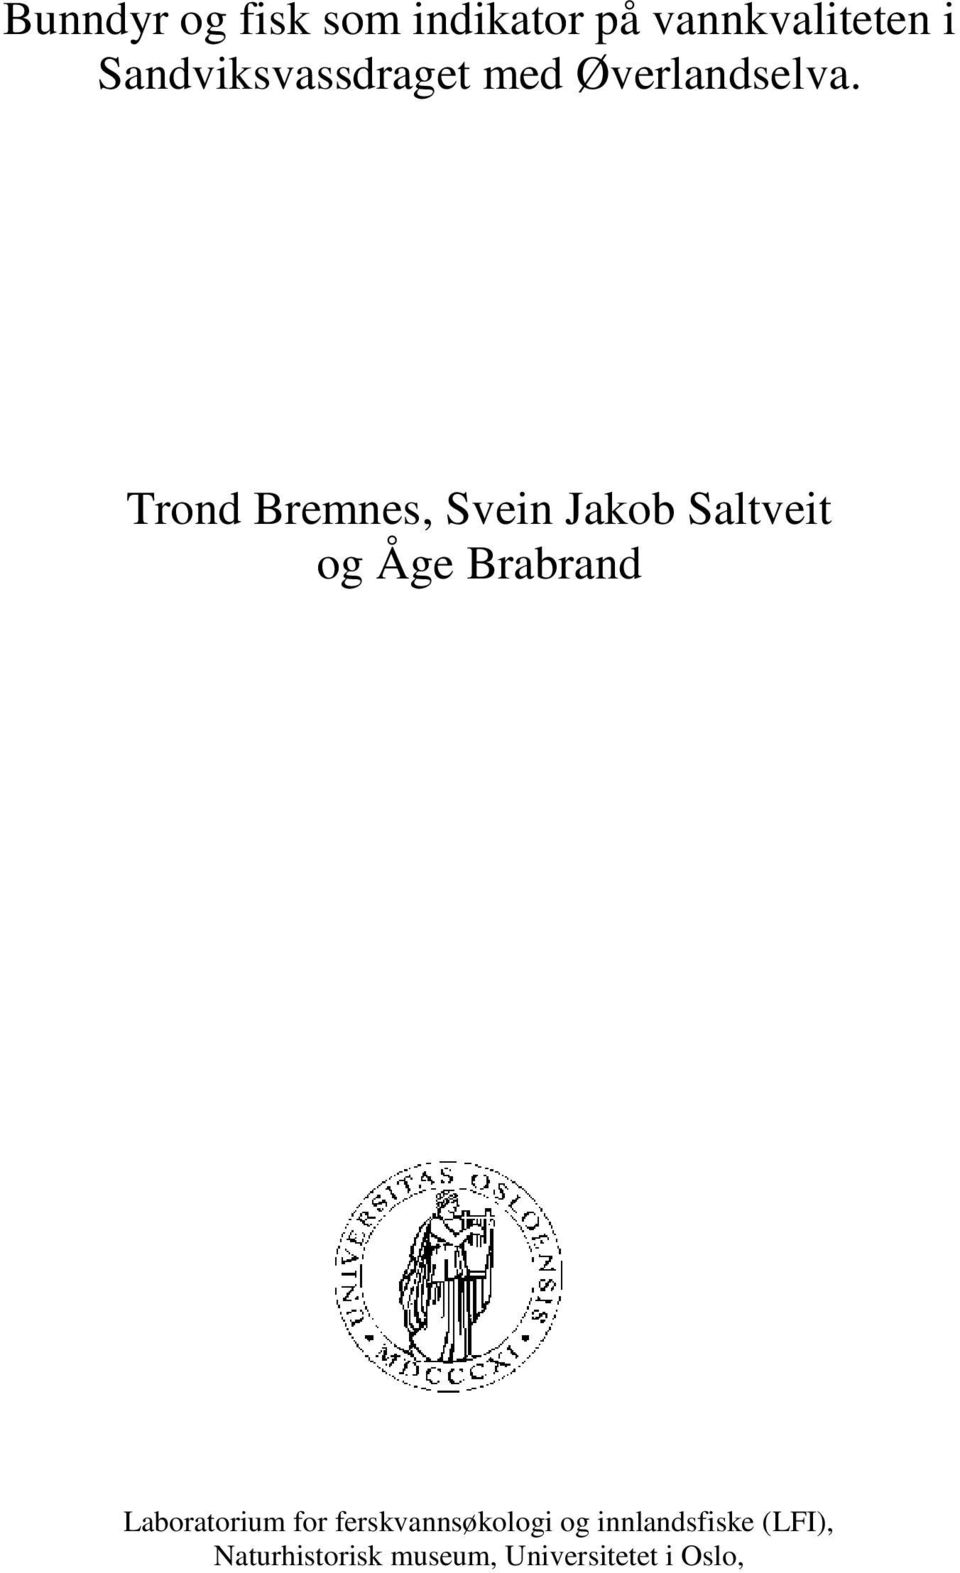 Trond Bremnes, Svein Jakob Saltveit og Åge Brabrand